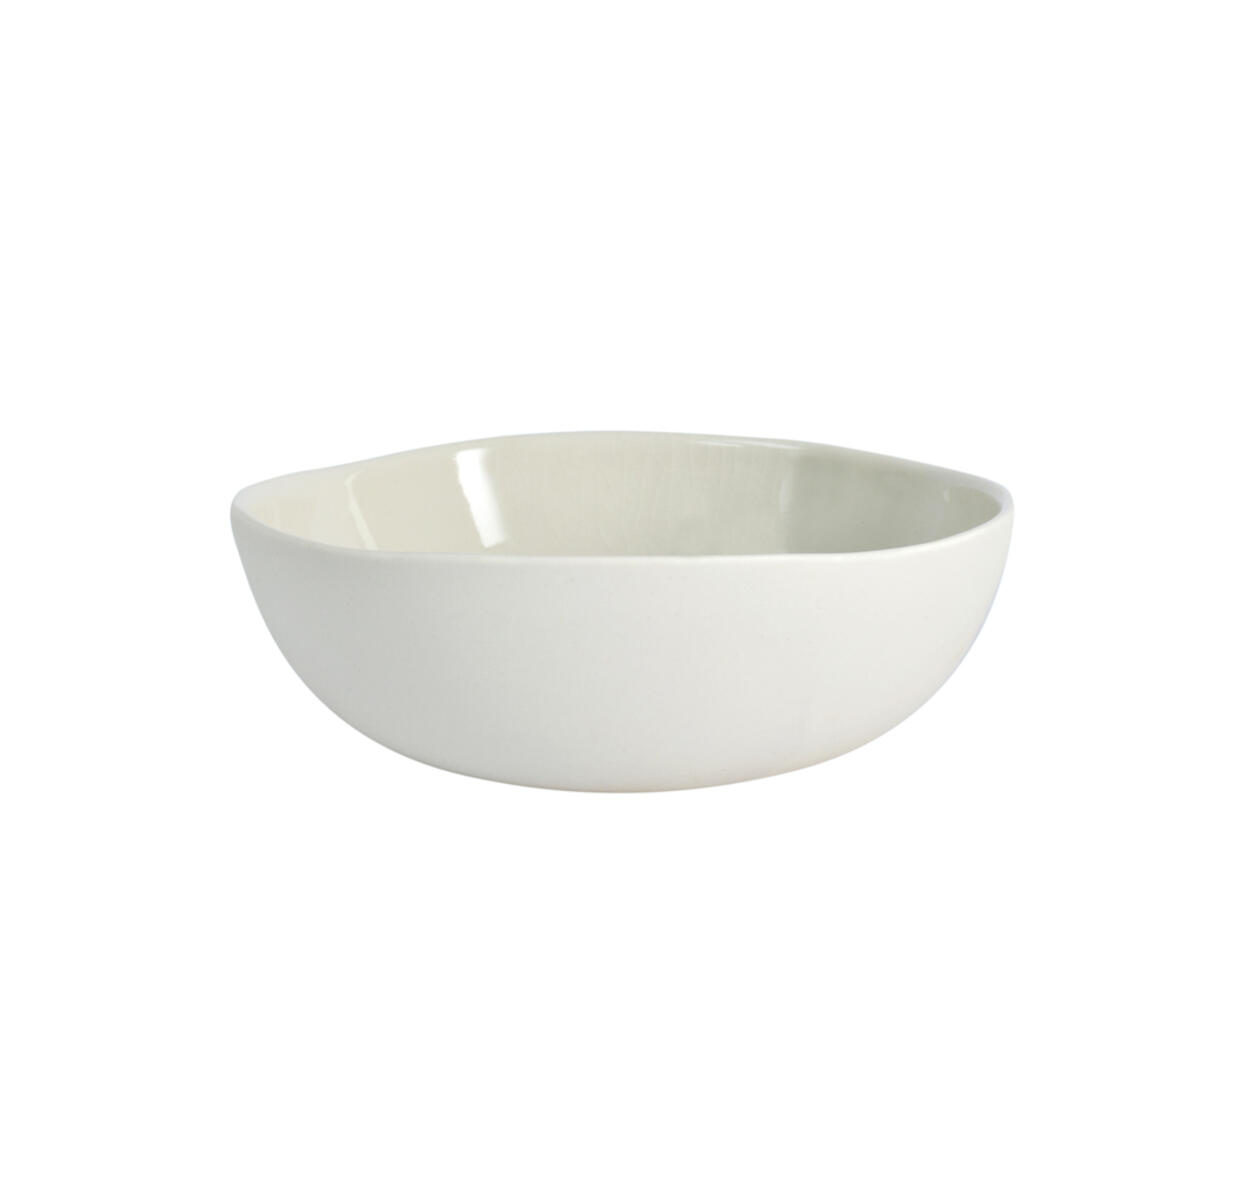 bowl maguelone quartz ceramic manufacturer